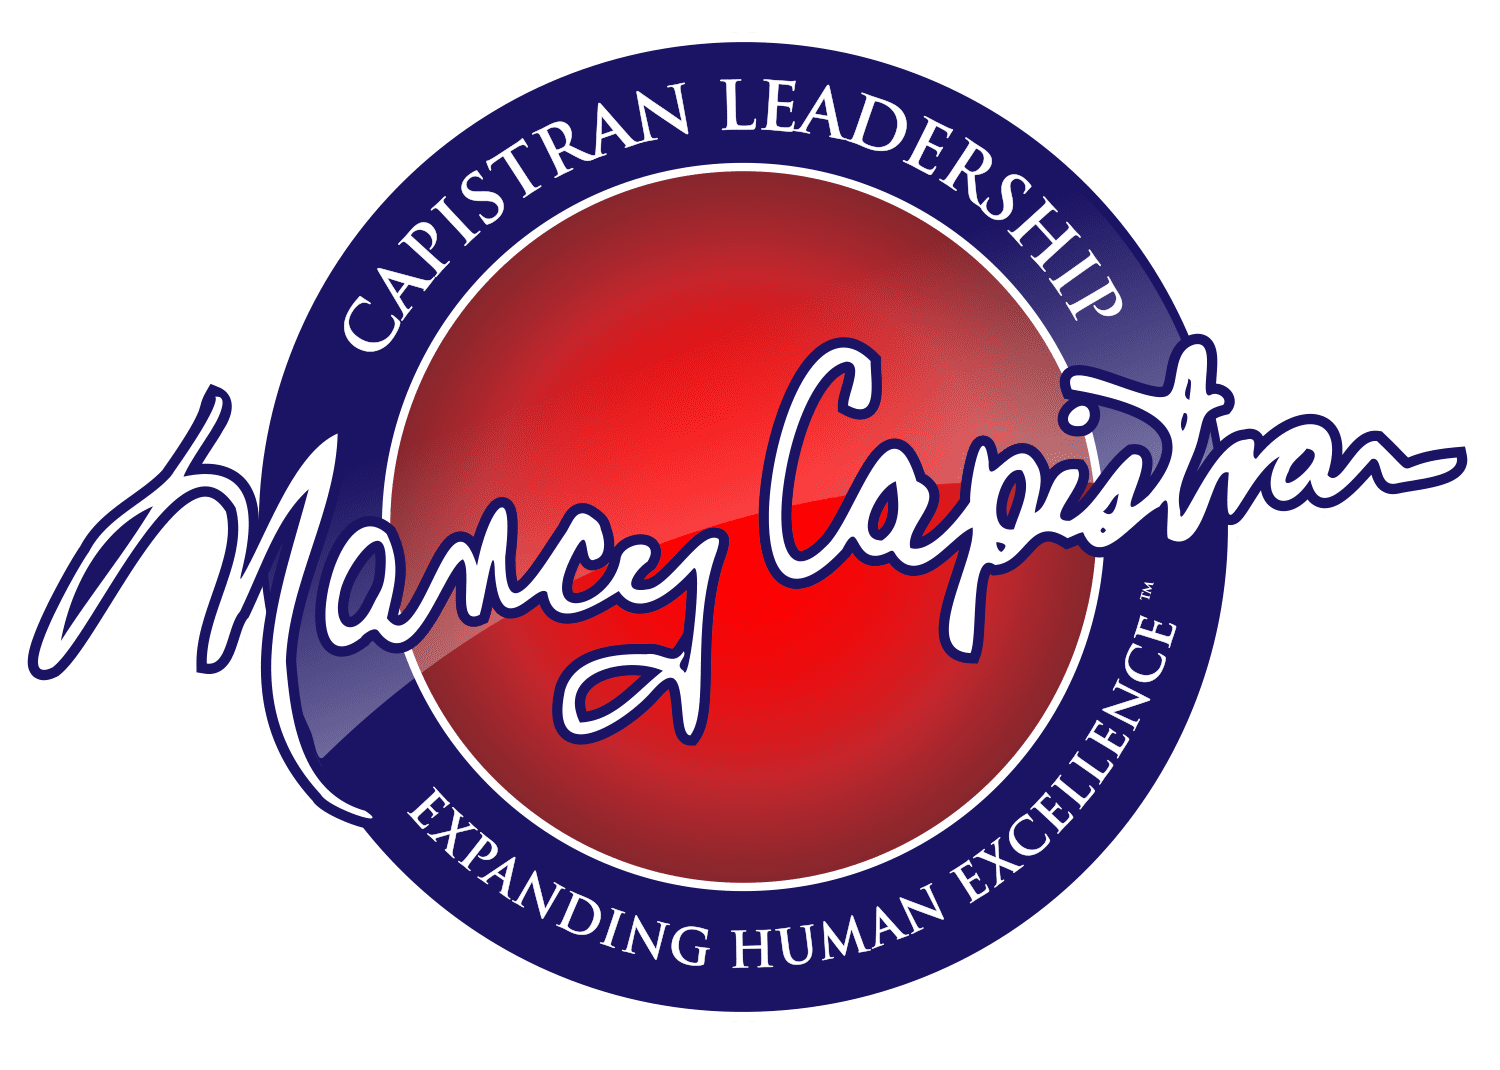 Nancy_Capistran logo